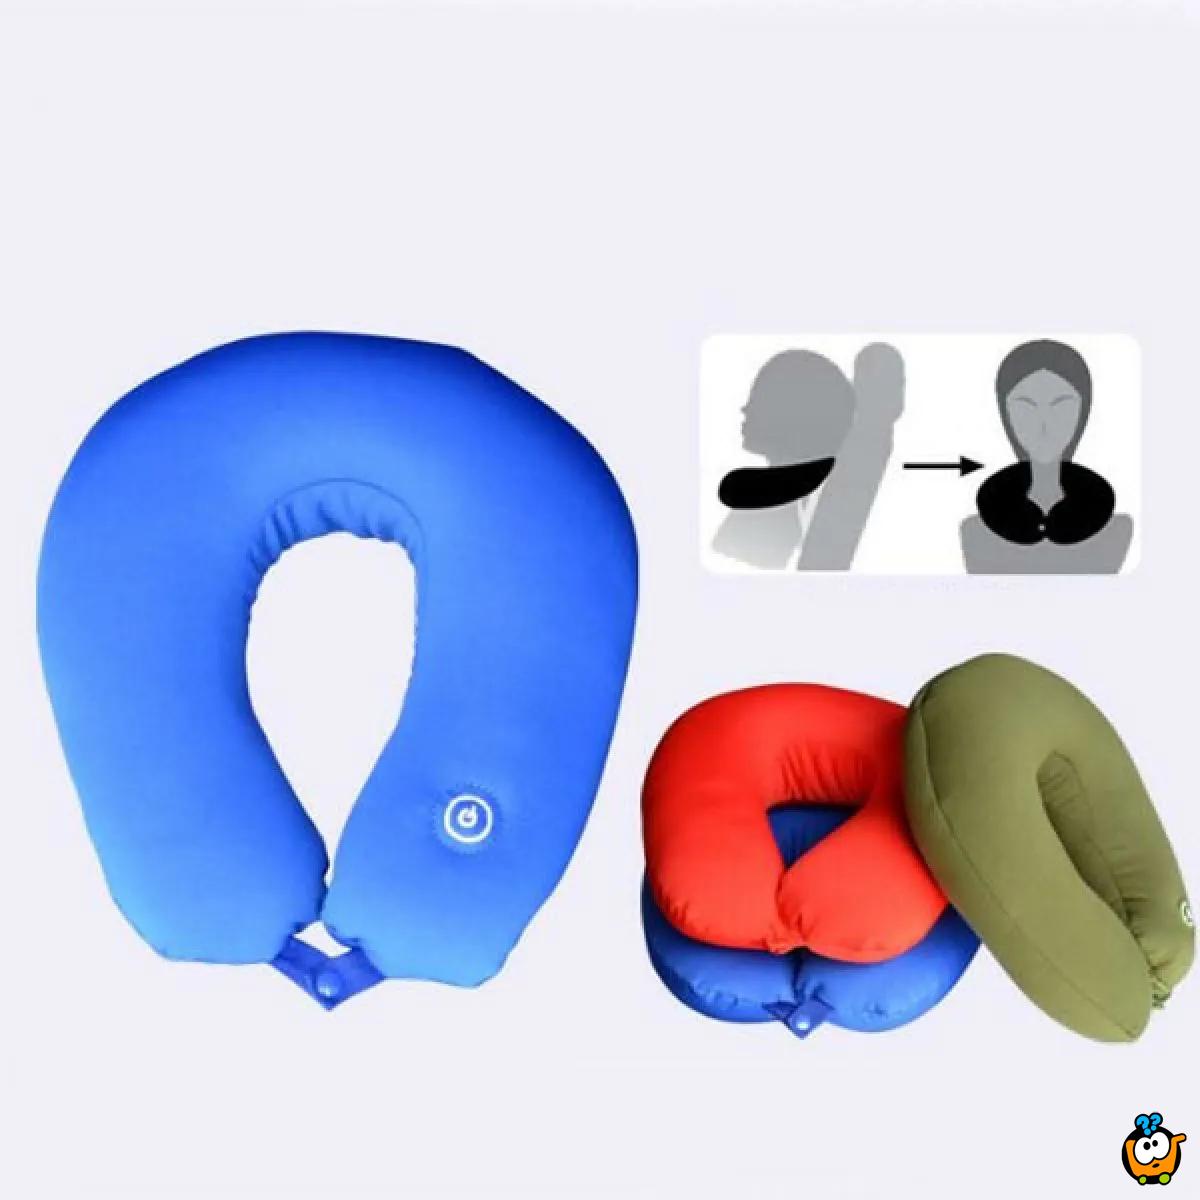 Vibracioni jastuk za vrat - za relaksaciju ili udobno putovanje